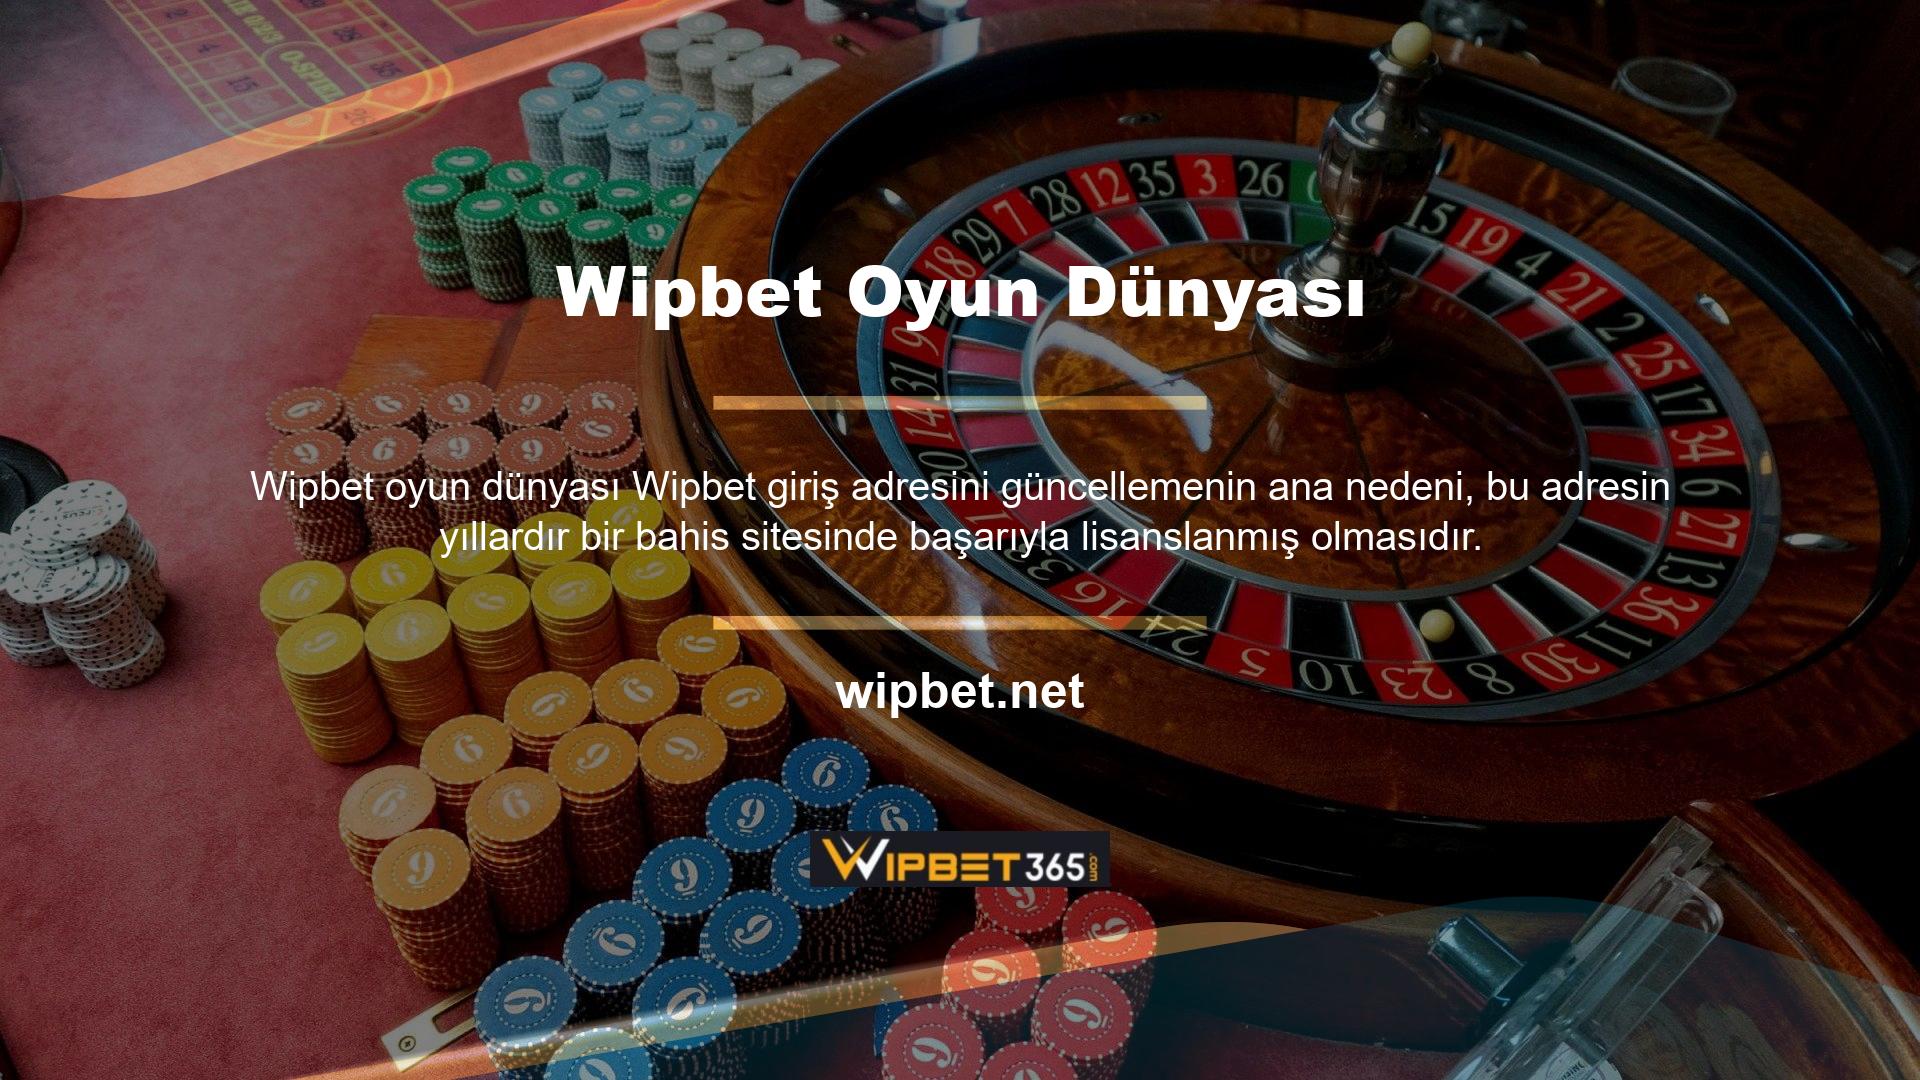 Bildiğiniz gibi Türkiye'de online casino sistemleri yasaktır